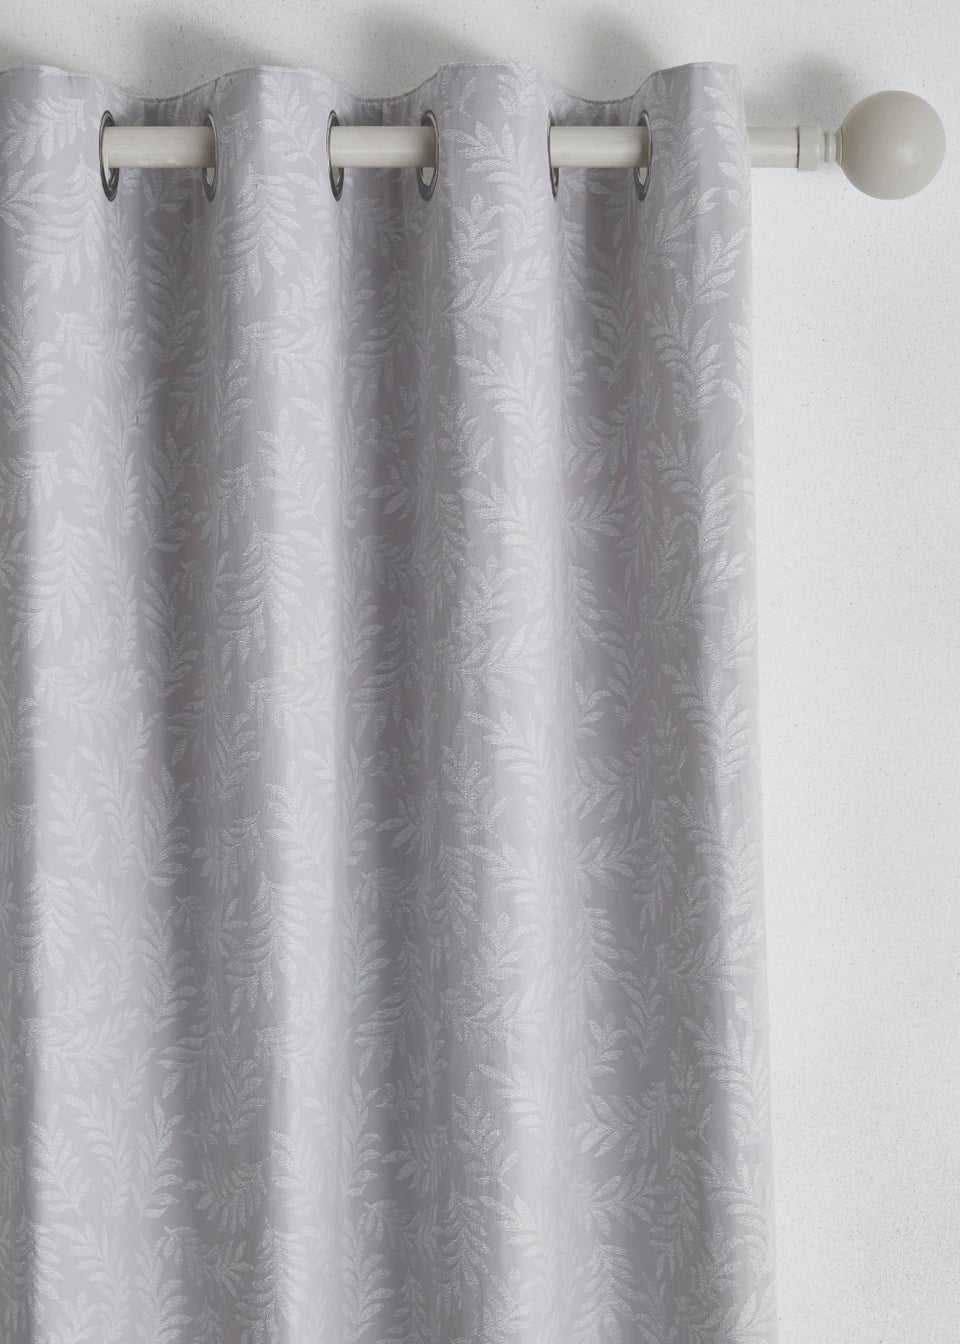 Dreams & Drapes Telford Jacquard Eyelet Curtains